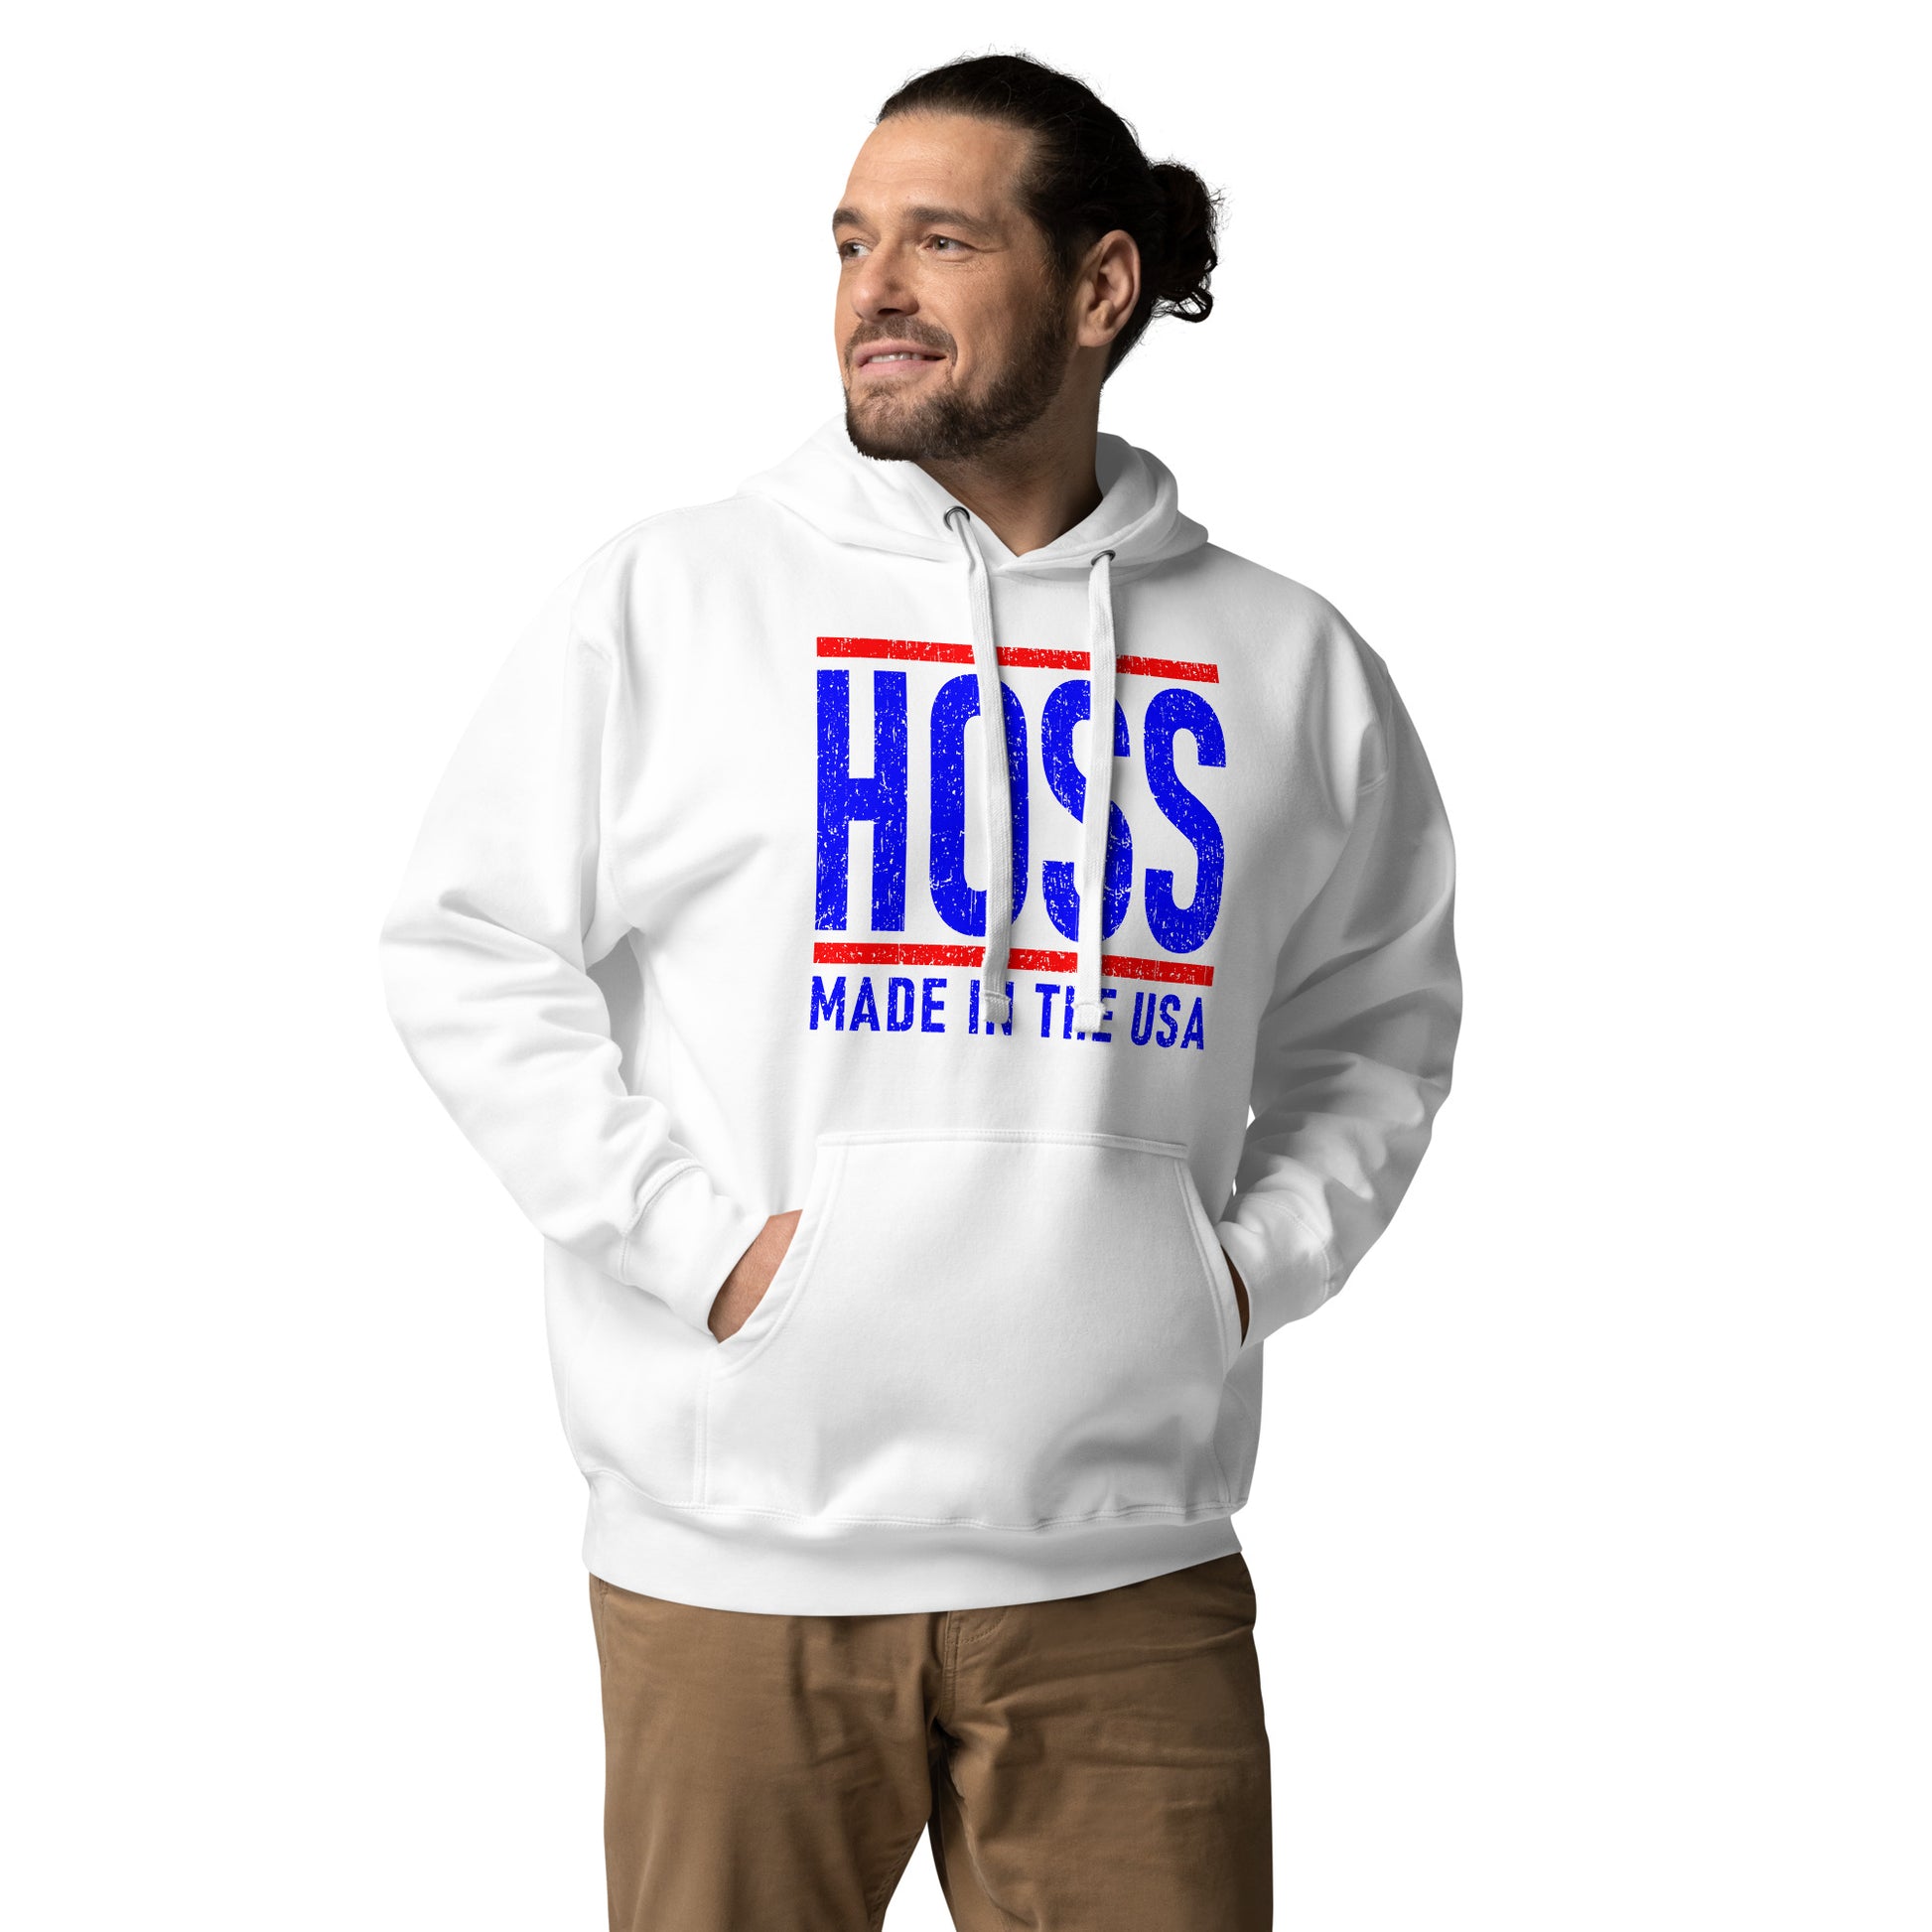 Hoss men's white hoodie sweater